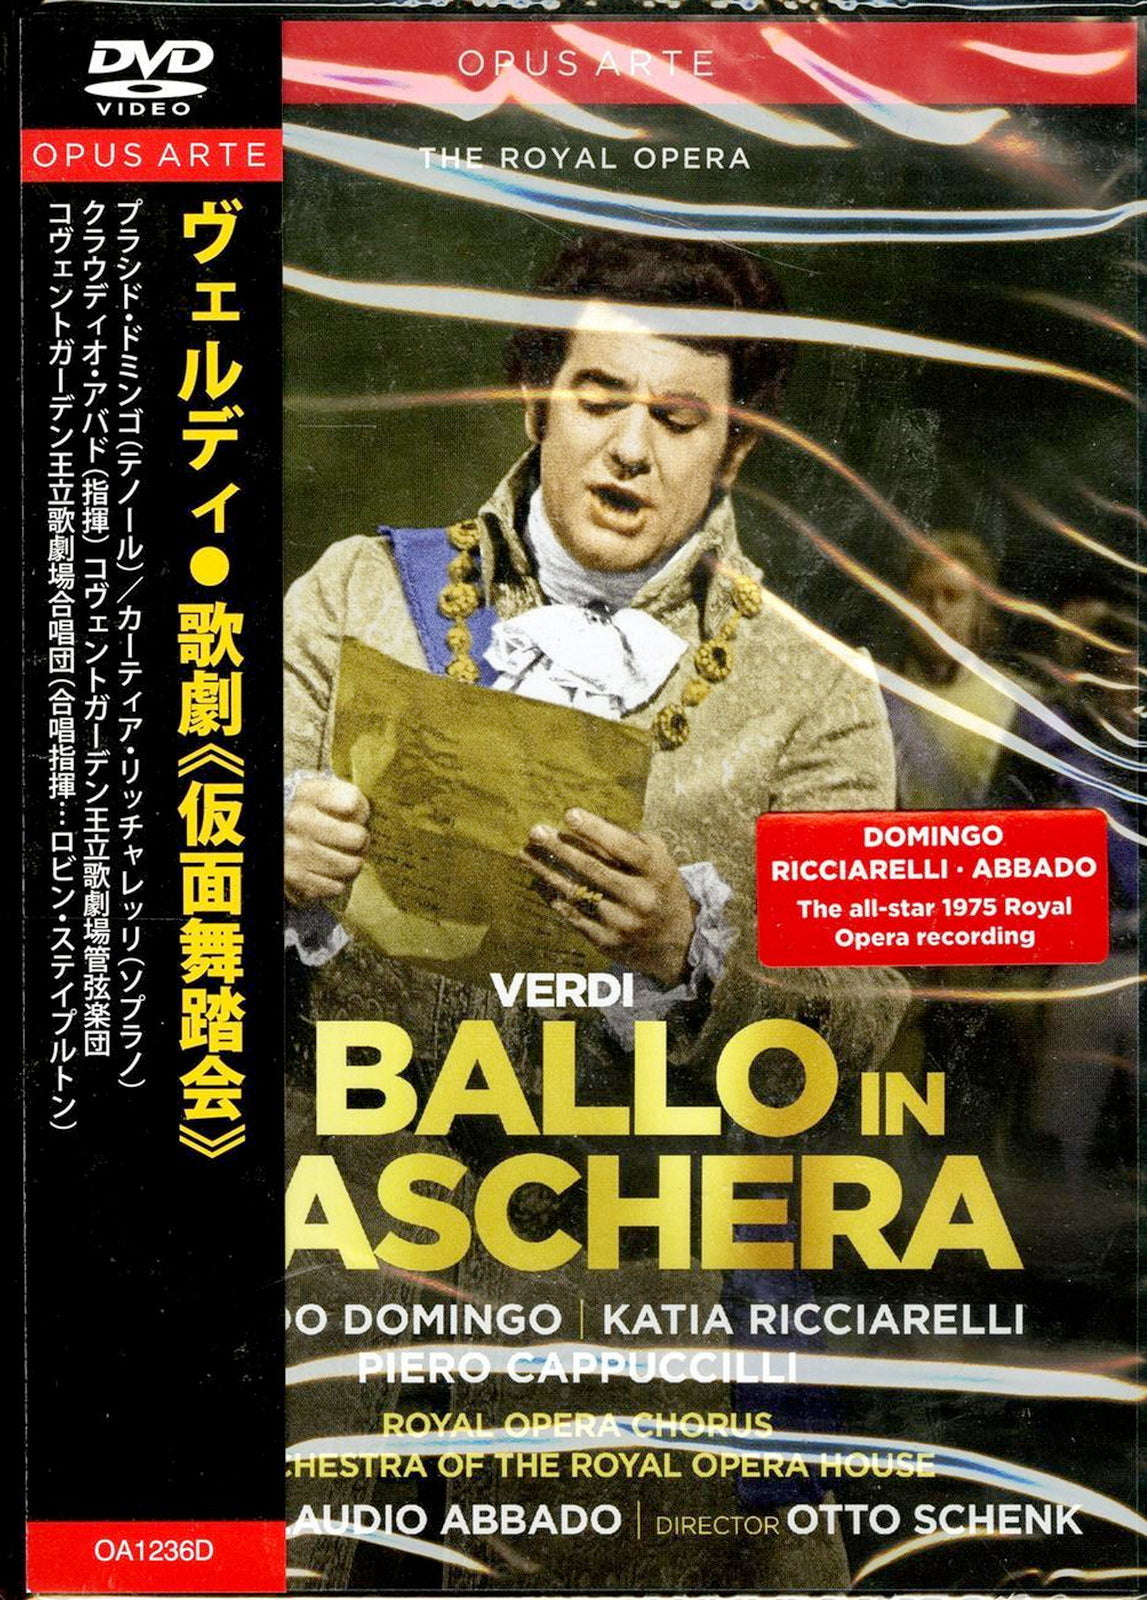 Claudio Abbado, Covent Garden Royal Opera House Orchestra, Covent Garden Royal Opera Chorus - Verdi (1813-1901) Un Ballo In Maschera : Schenk, Claudio Abbado / Royal Opera House, Domingo, Cappuccilli, Ricciarelli, Etc (1975 Stereo) - Import DVD